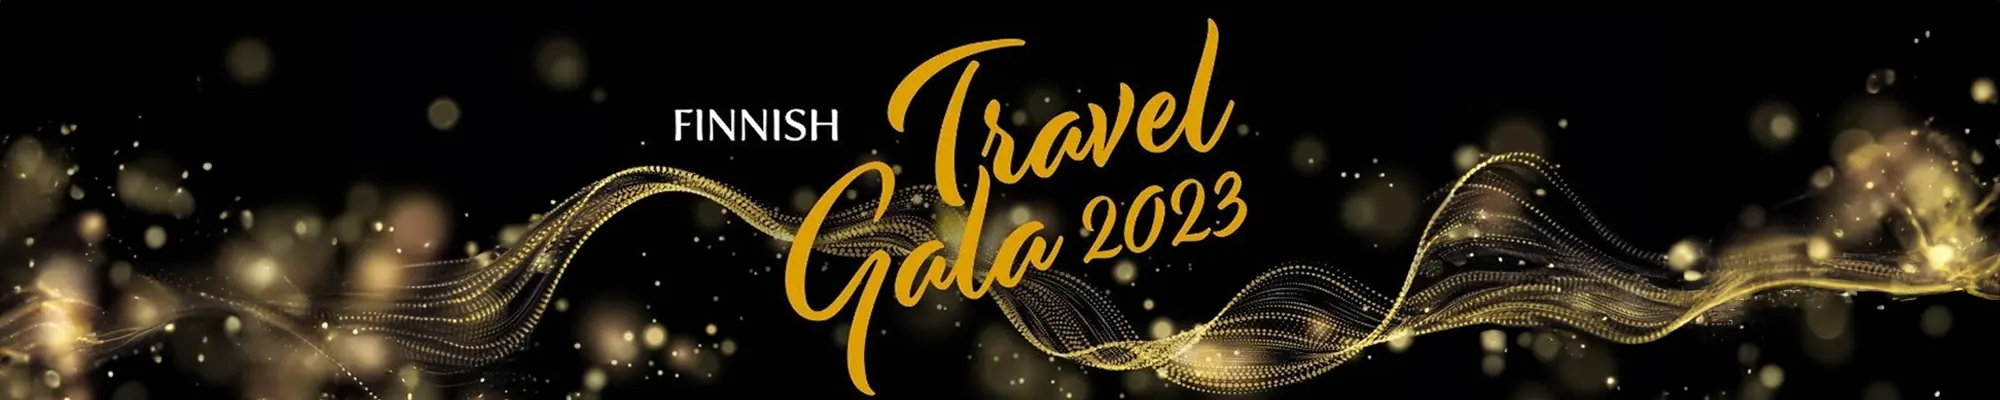 Travel Gala 2023 - Aventours